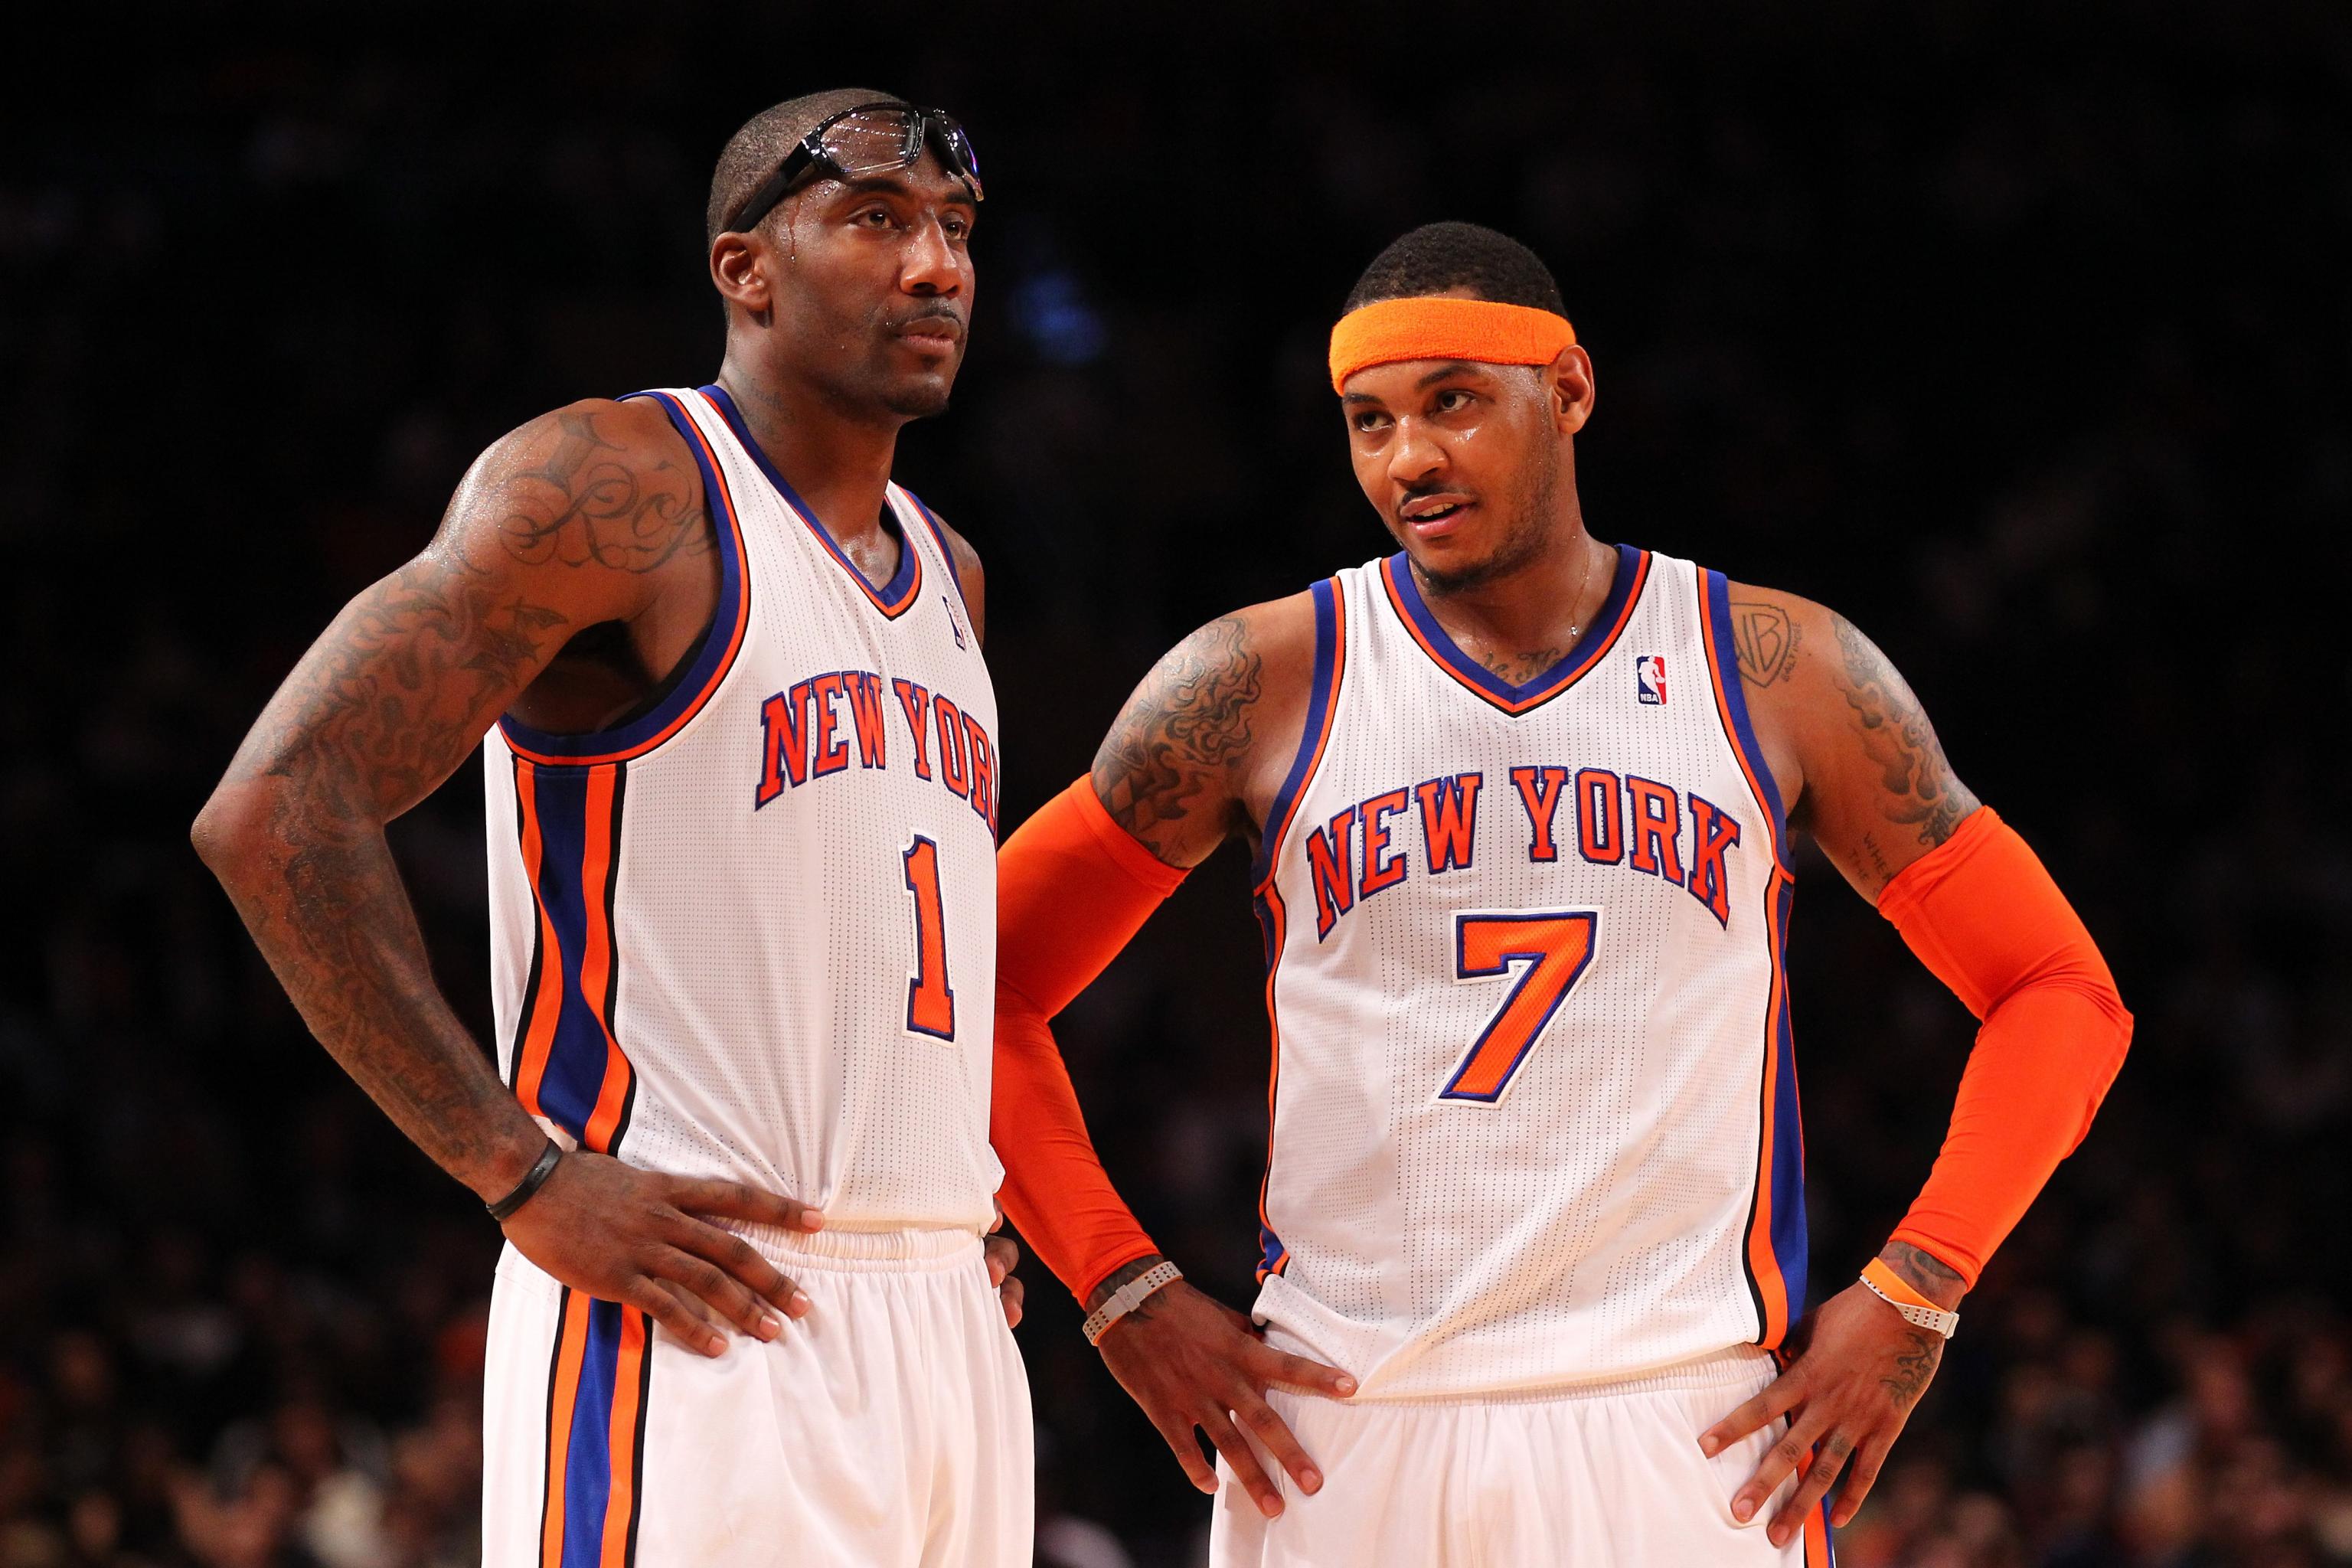 NBA Jersey Database, New York Knicks Alternate Jersey 2013-2014